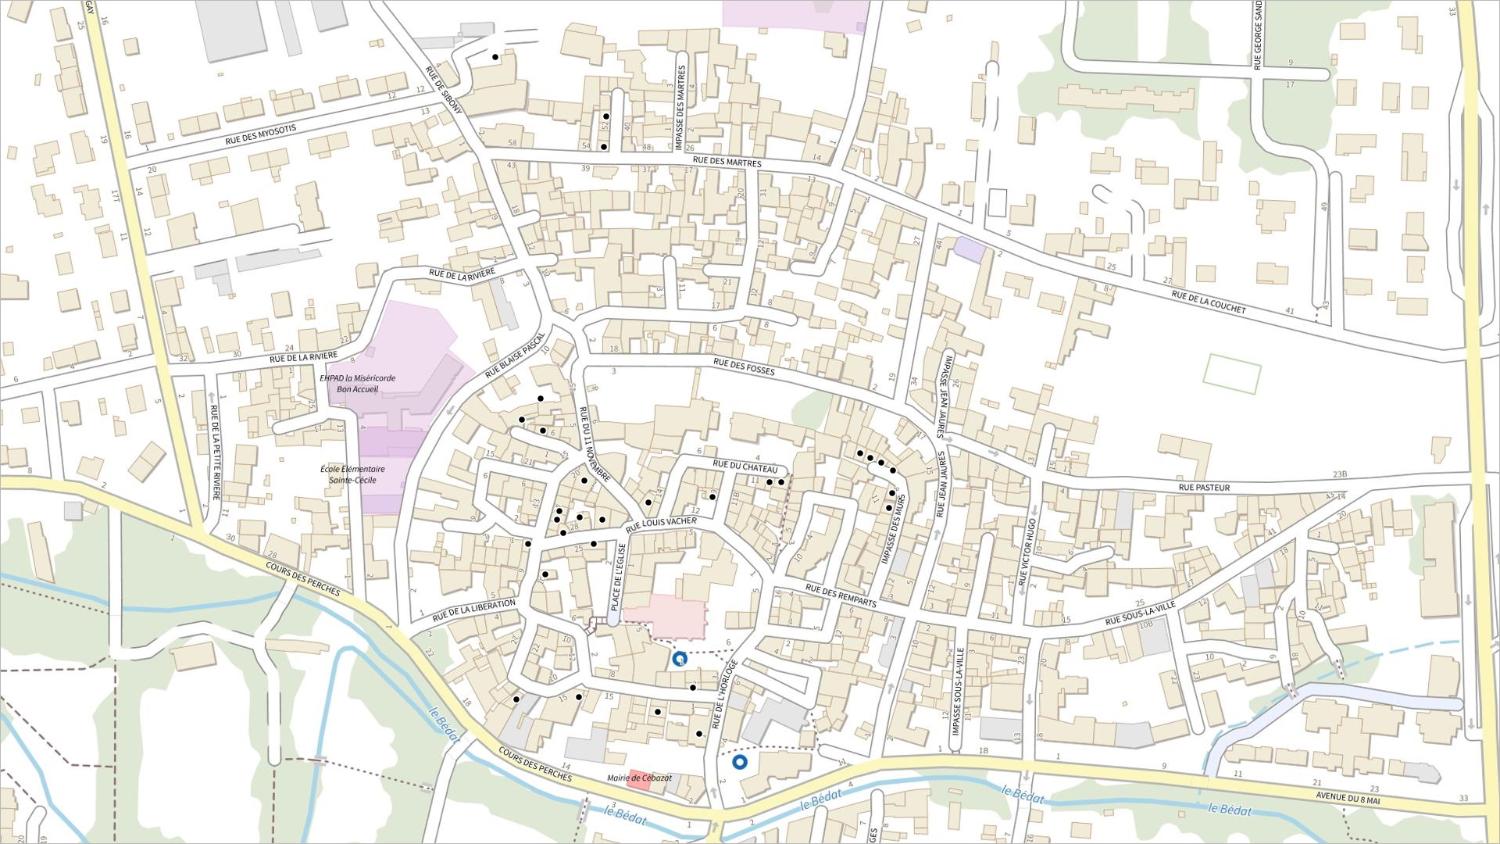 Commune de Cébazat : localisation des maisons vigneronnes (Carte IGN)